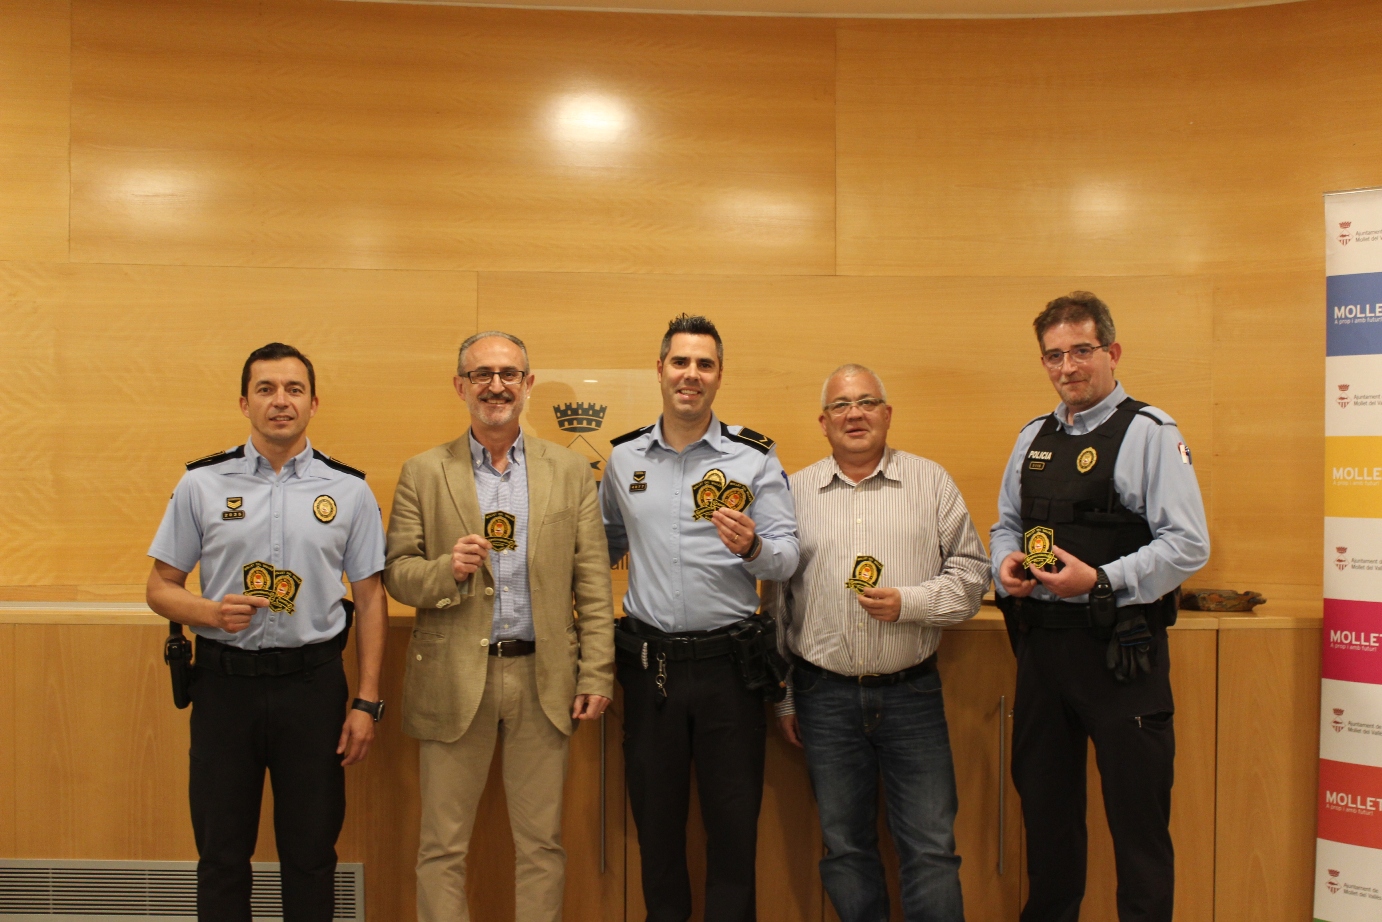 Membres de la policia municipal amb l'alcalde Josep Monràs i el regidor Josep Garzón